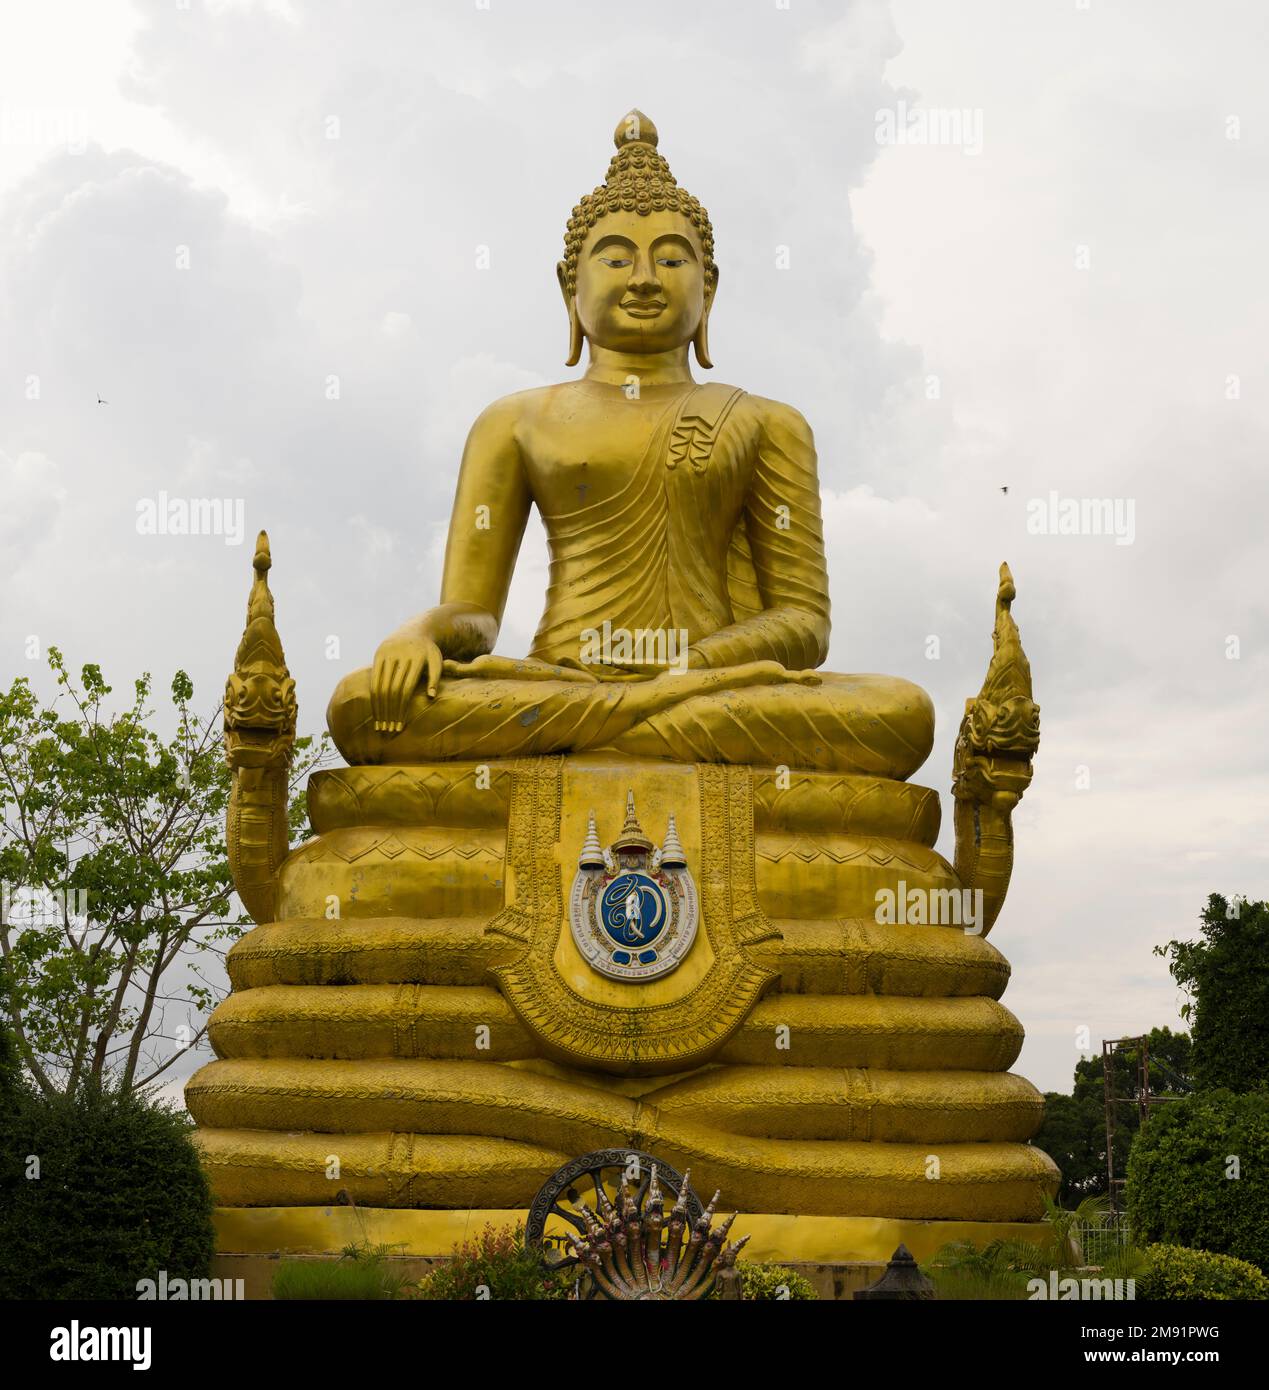 Phuket, Thaïlande. 30 novembre 2022. Grand temple de Bouddha sur l'île de Phuket. Statues de Bouddha dans le jardin du temple. Voyages et aventures exotiques. Banque D'Images